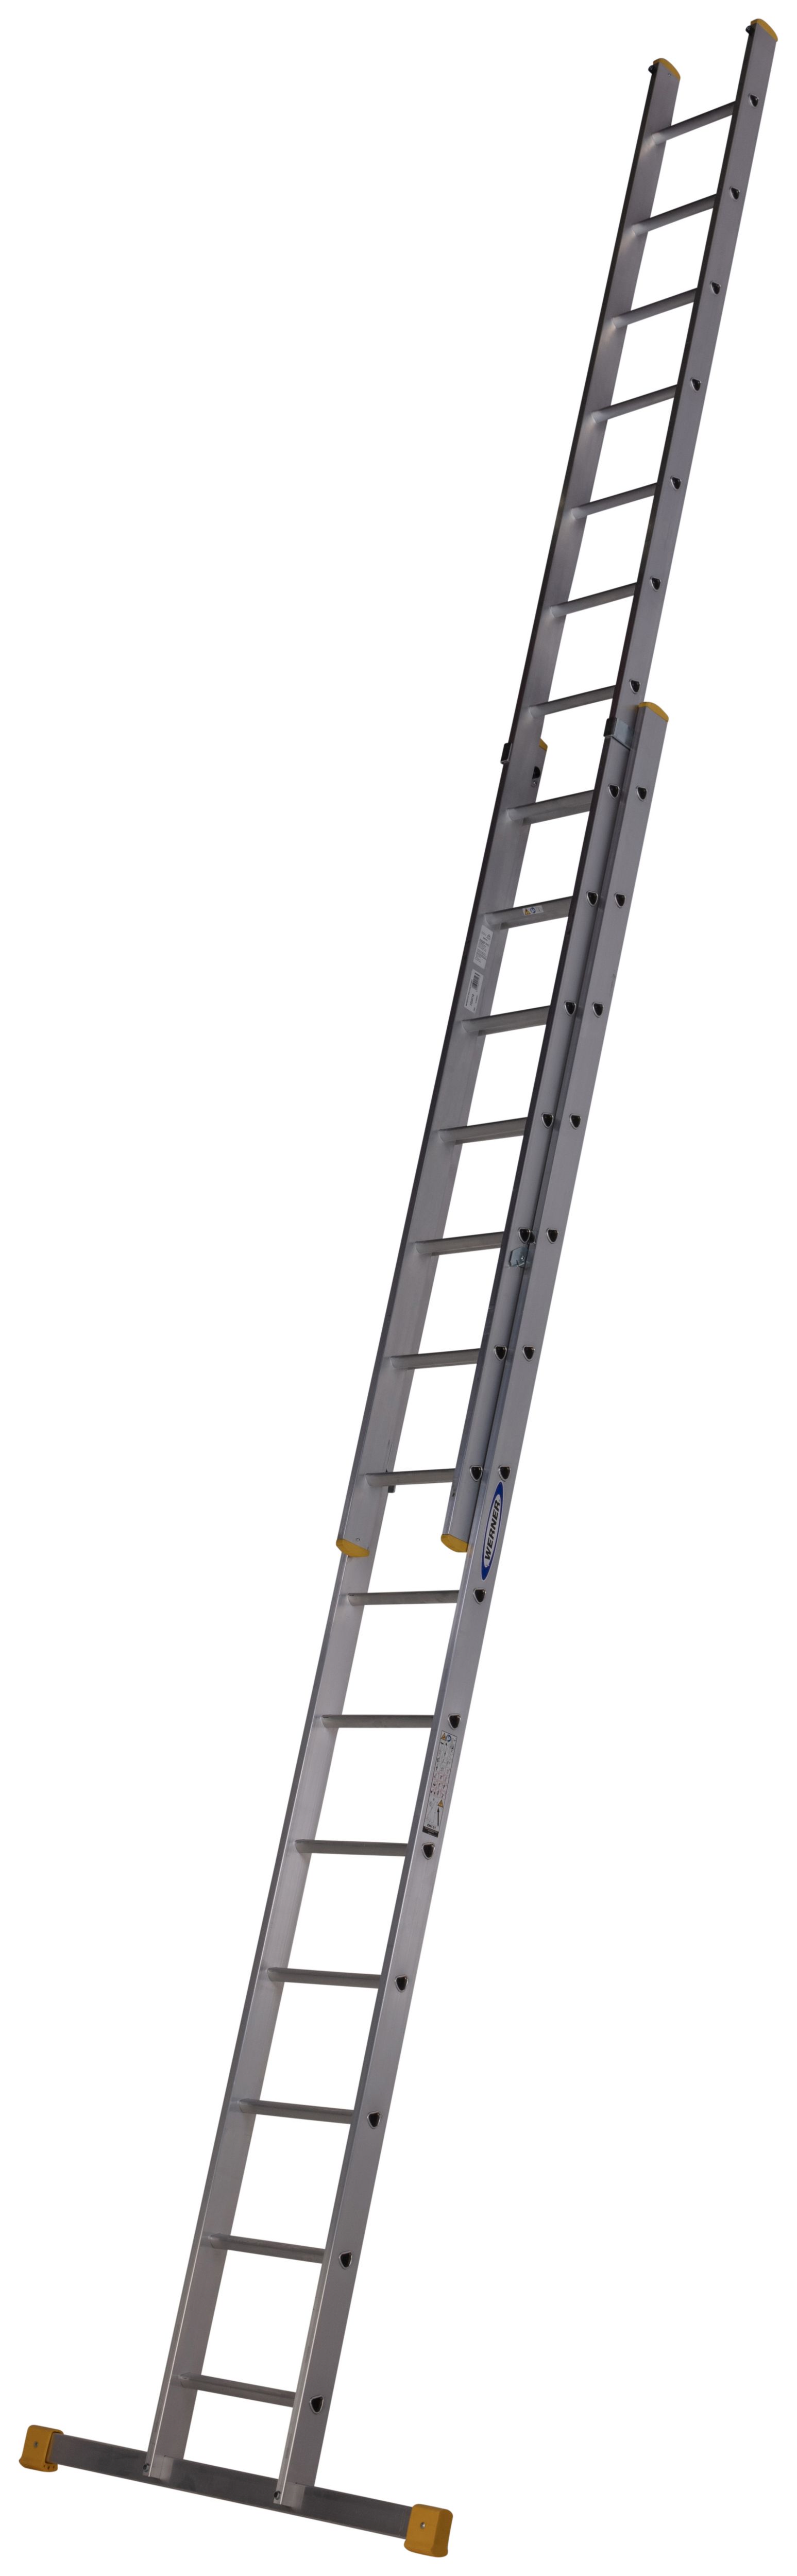 Werner D Rung 2 Section High Grade Aluminium Extension Ladder - Max Height 7.16m